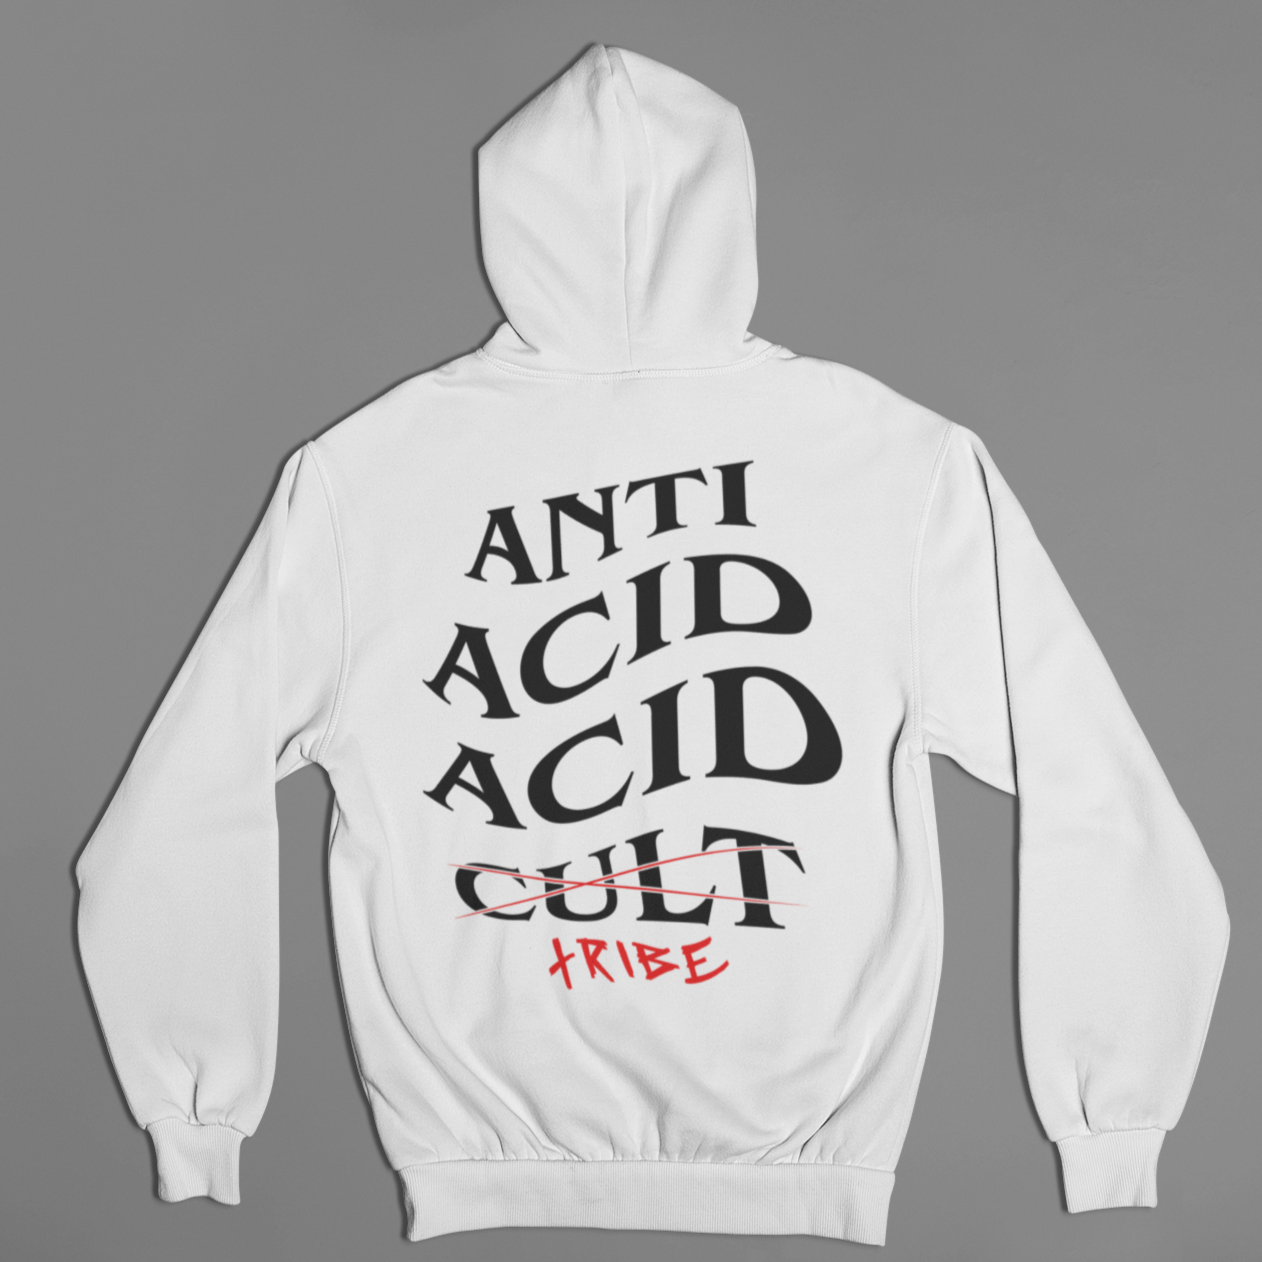 Anti Acid Acid Tribe Unisex Hoodie (White)